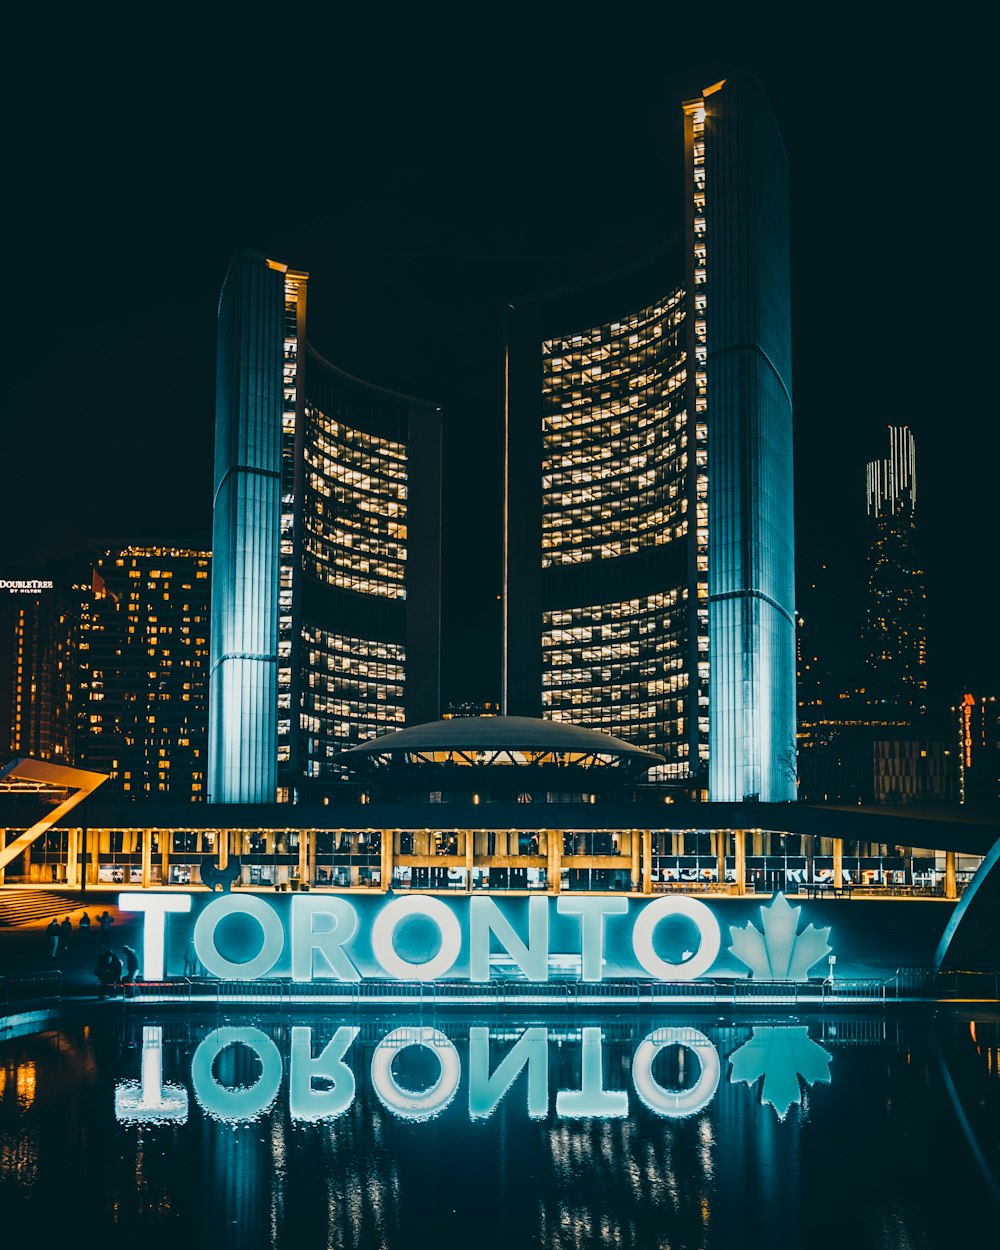 Toronto at nighttime